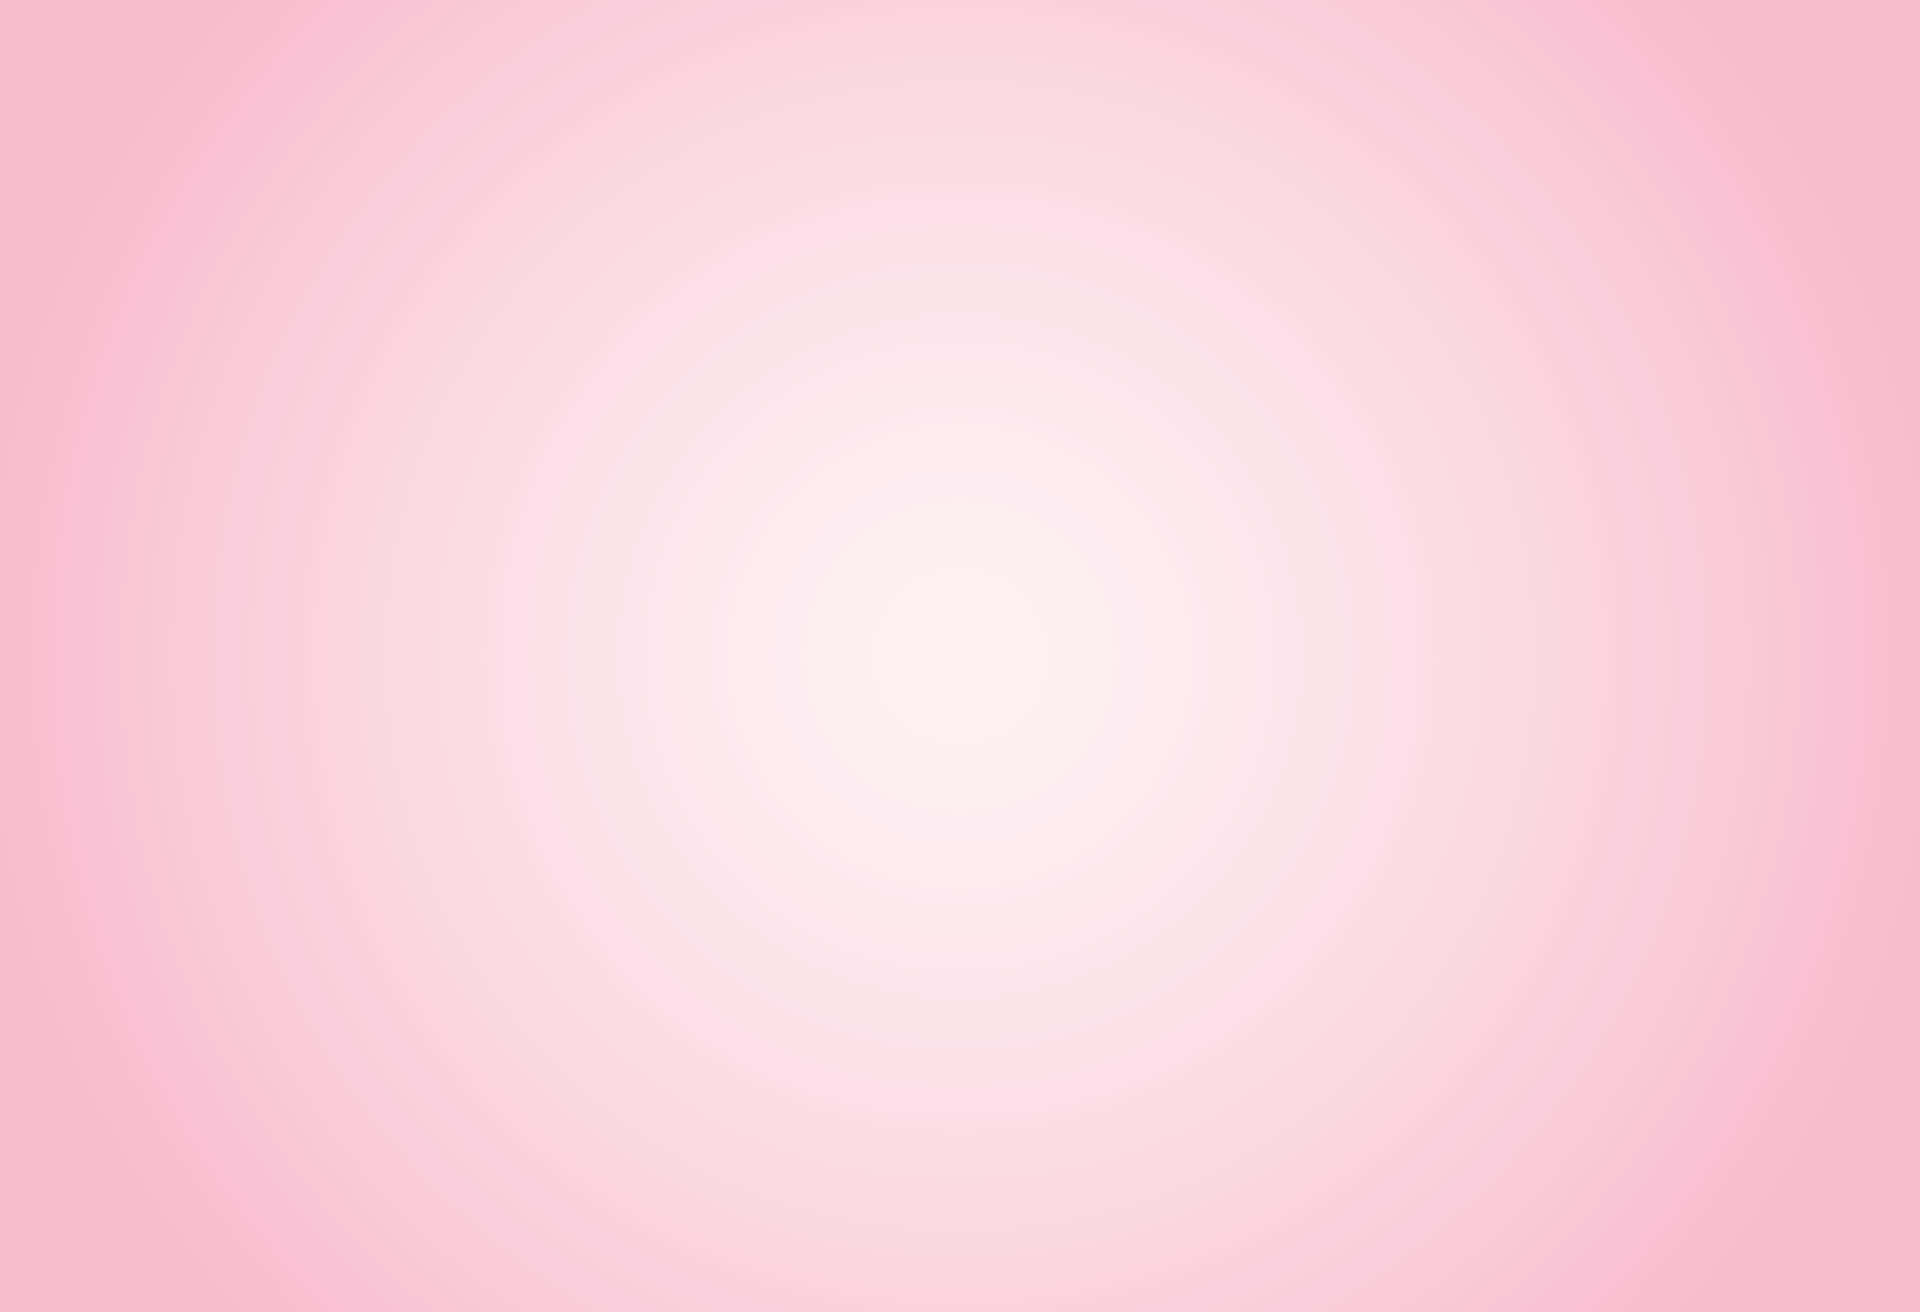 Minimalist Light Pink Gradient Background